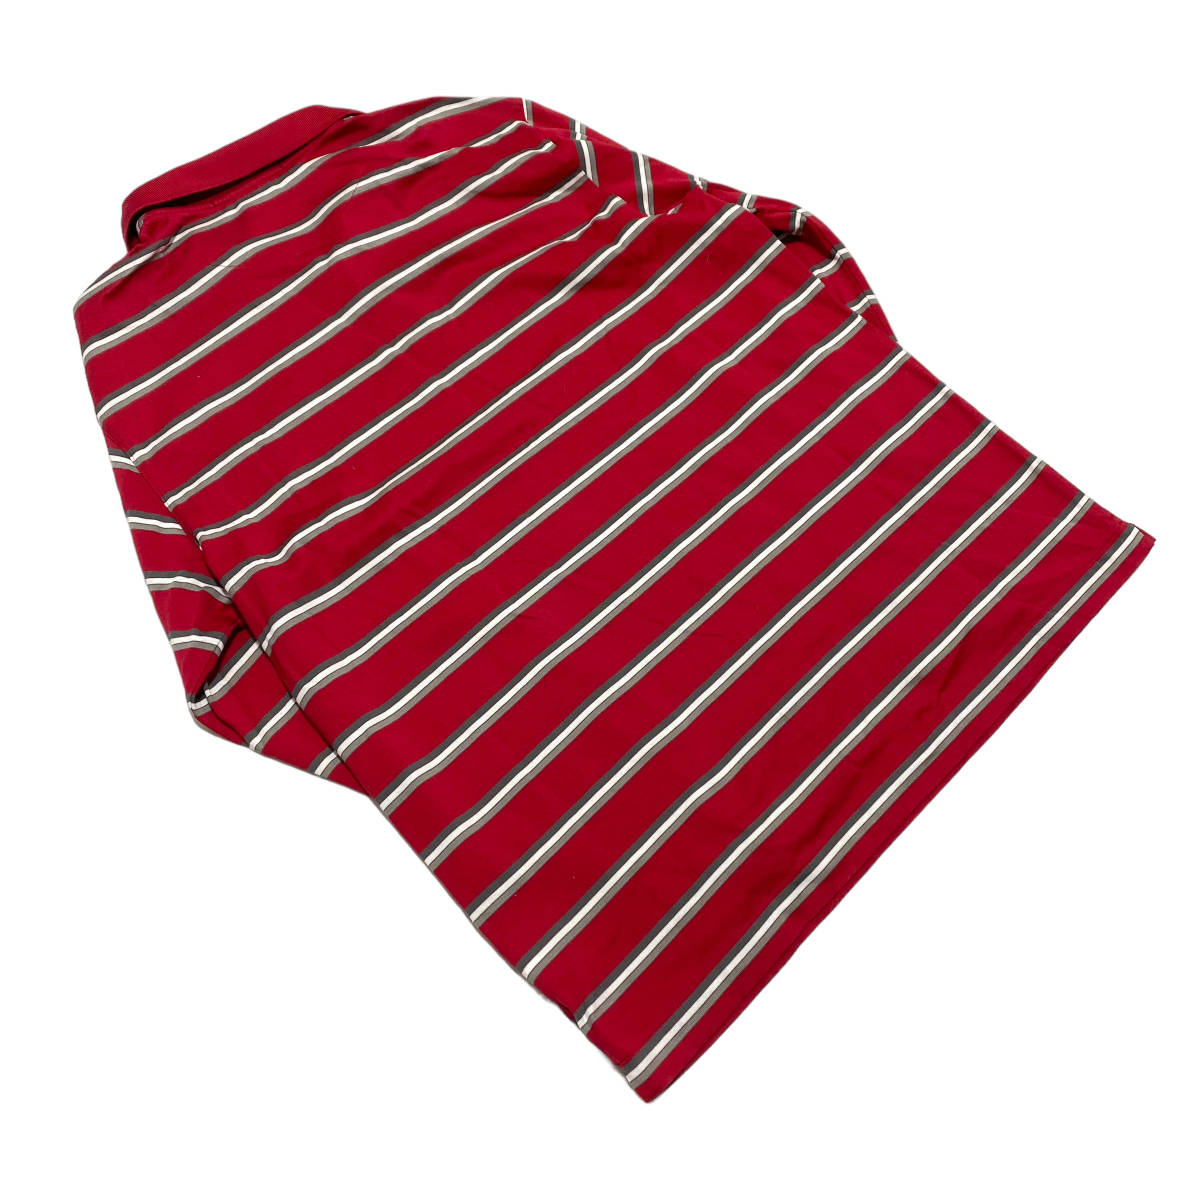 NIKE TIGER WOODS COLLECTION Nike Tiger Woods коллекция длинный рукав окантовка рубашка-поло XL красный мужской Golf одежда 23-1115